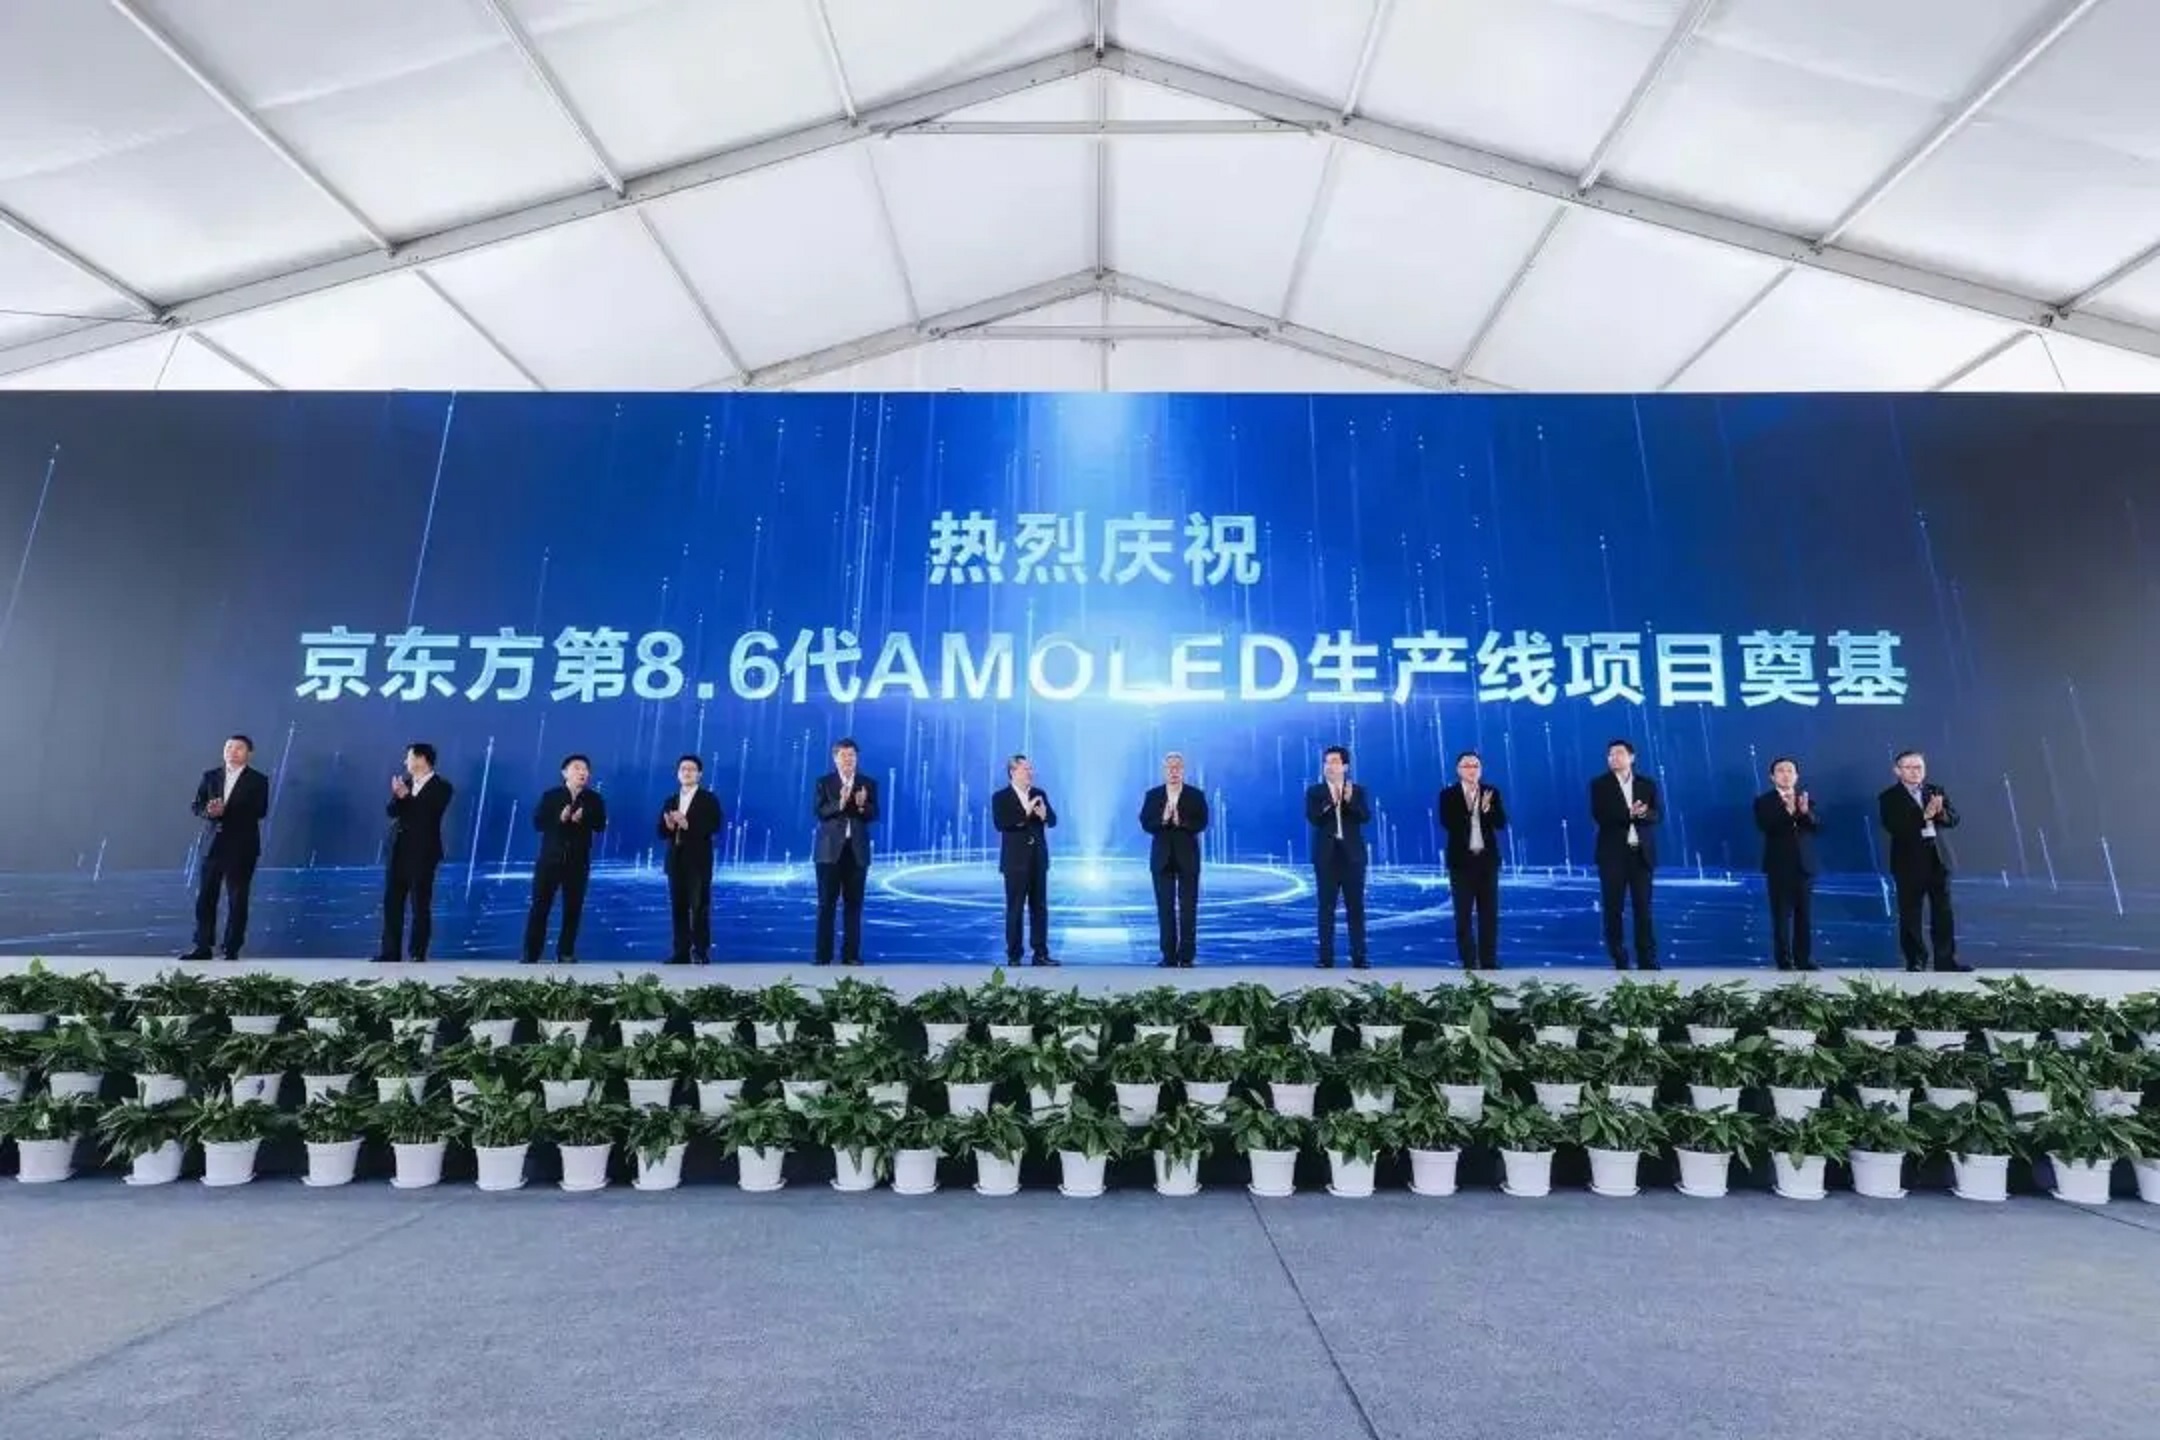 大陆面板龙头京东方投建的大陆首条、全球首批8.6代AMOLED 生产线项目，27日在成都奠基，预计2026年10月量产。（大陆四川成都市政府官网）